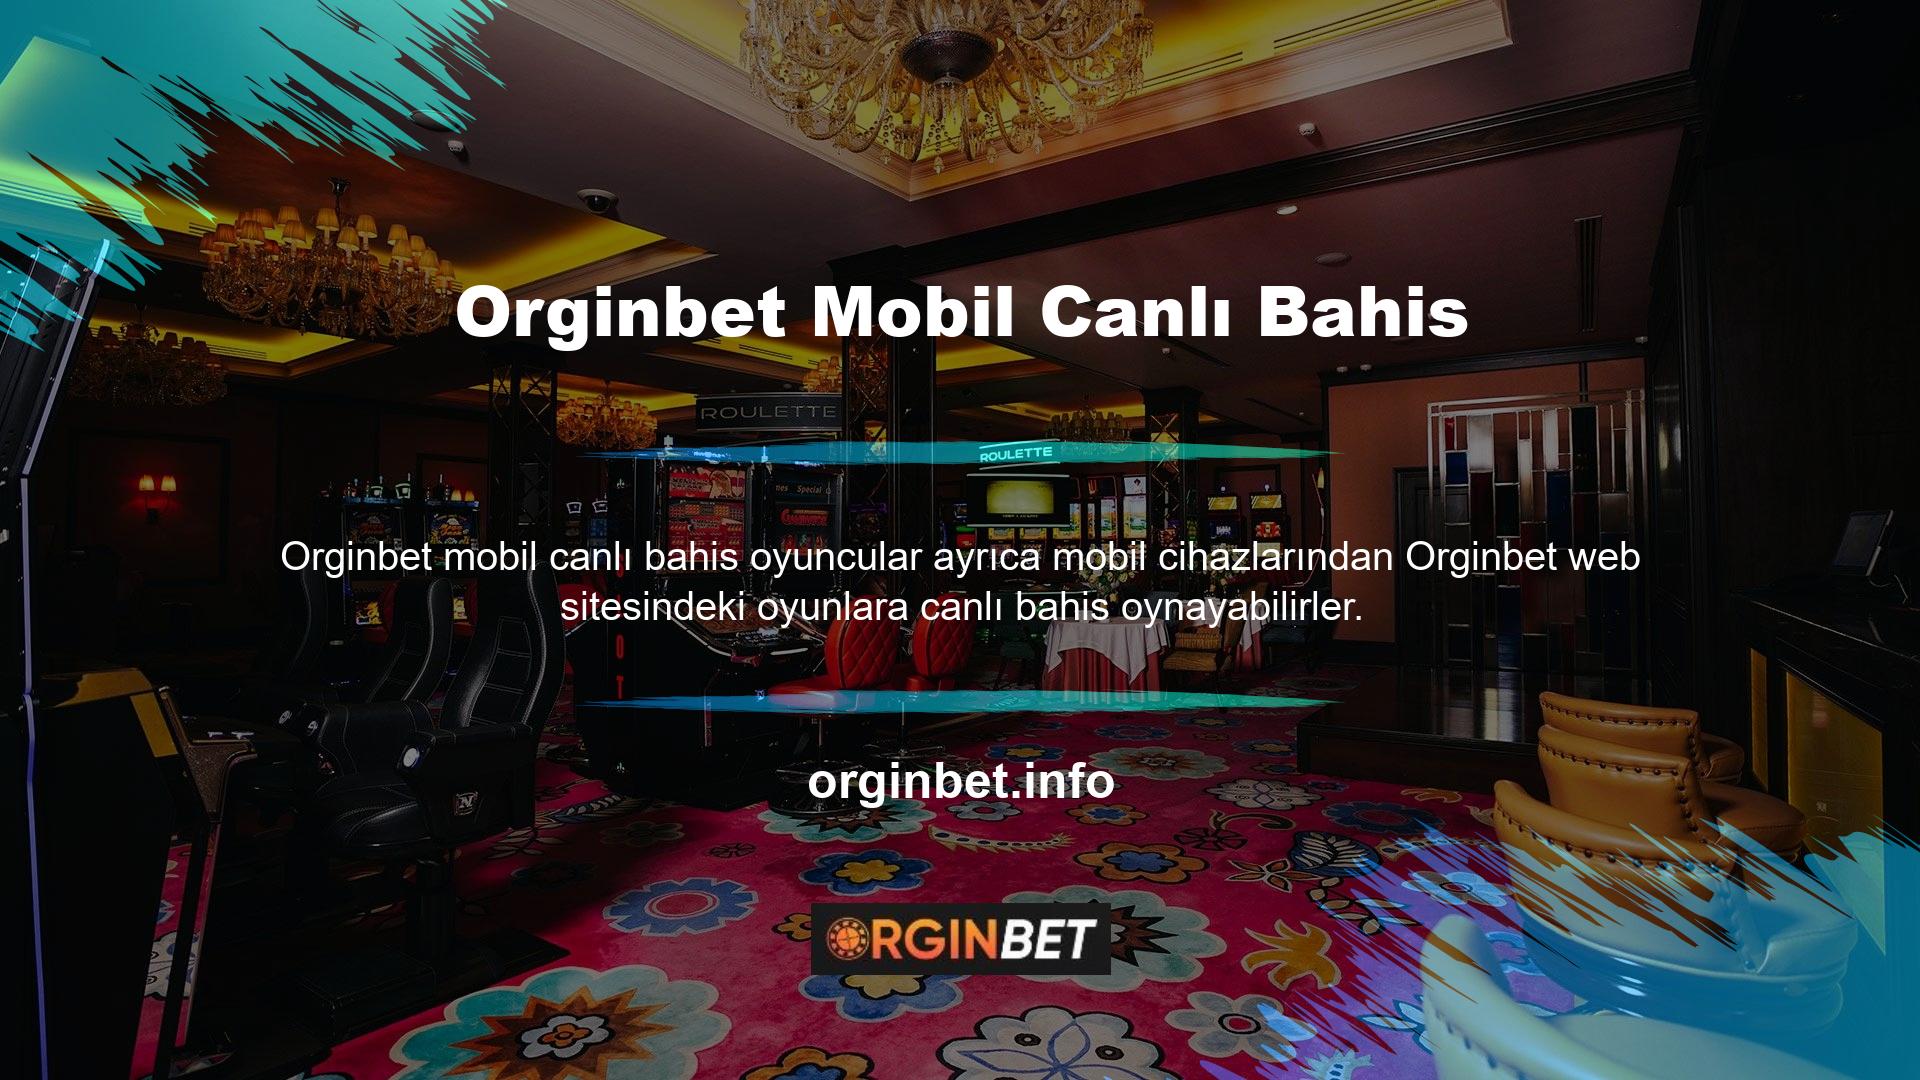 Orginbet web sitesi mobil kullanım için oldukça iyi bir teknik altyapıya sahiptir